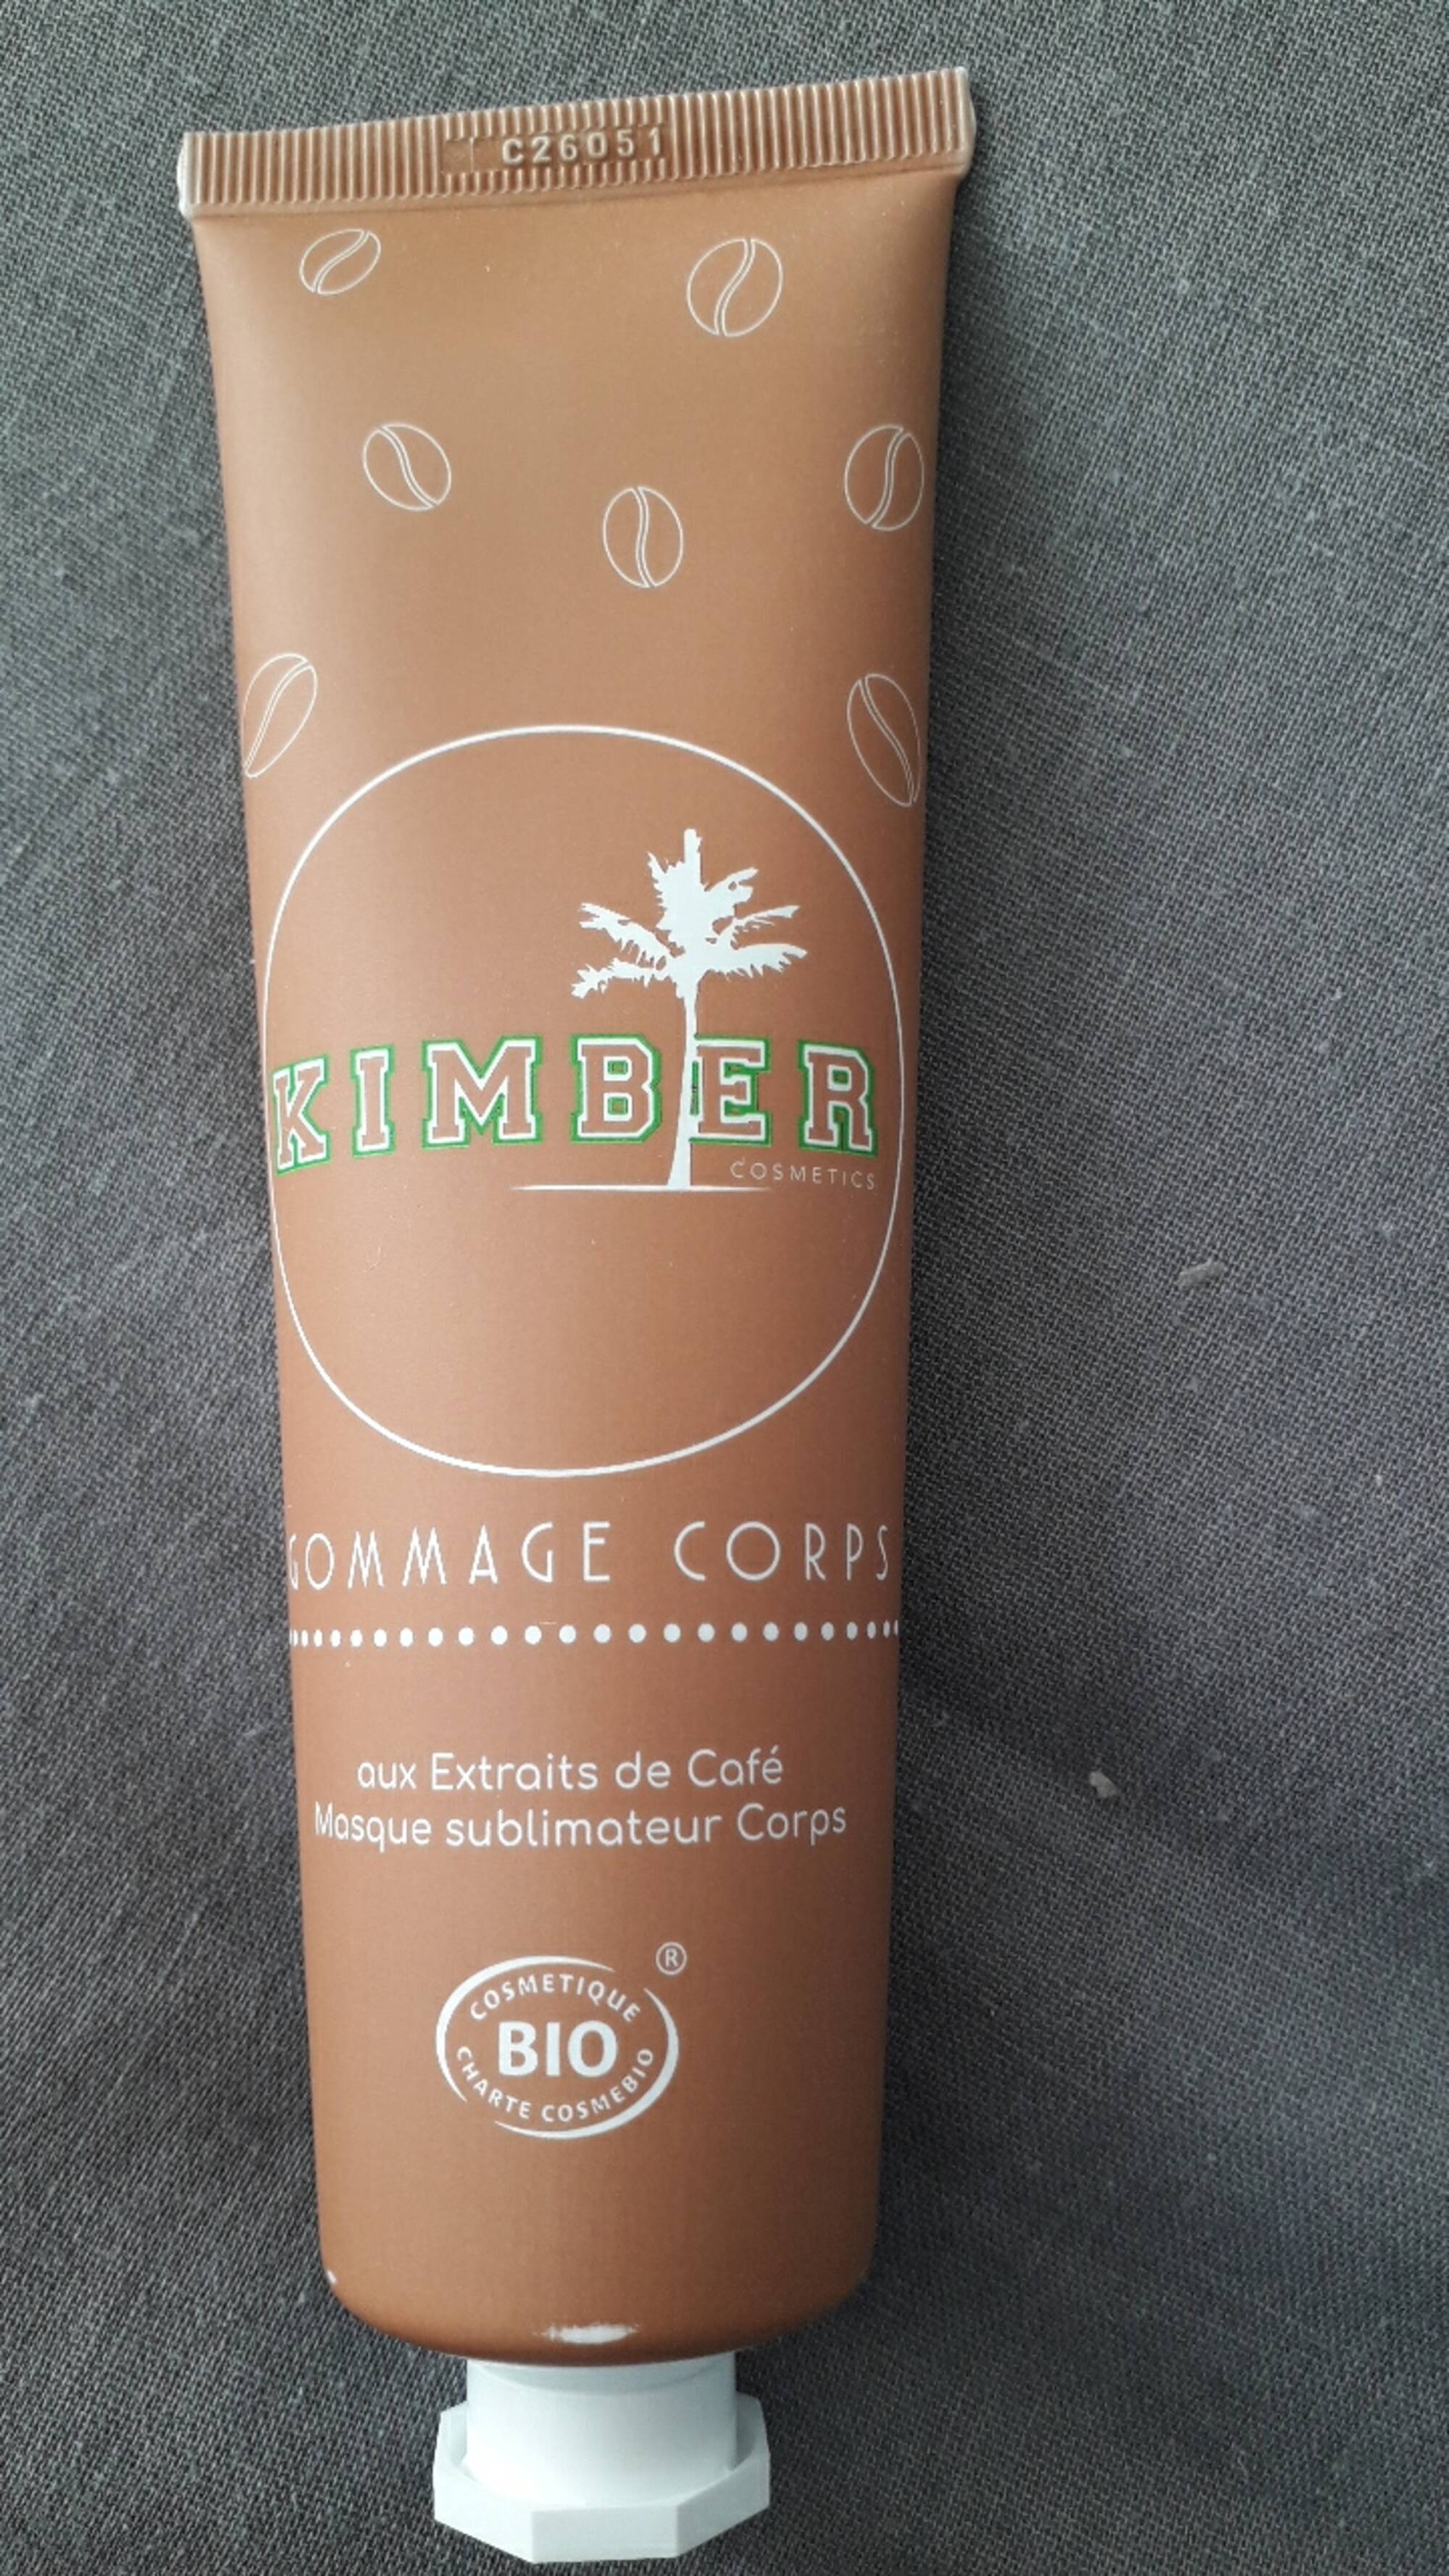 KIMBER - Gommage corps aux extraits de café